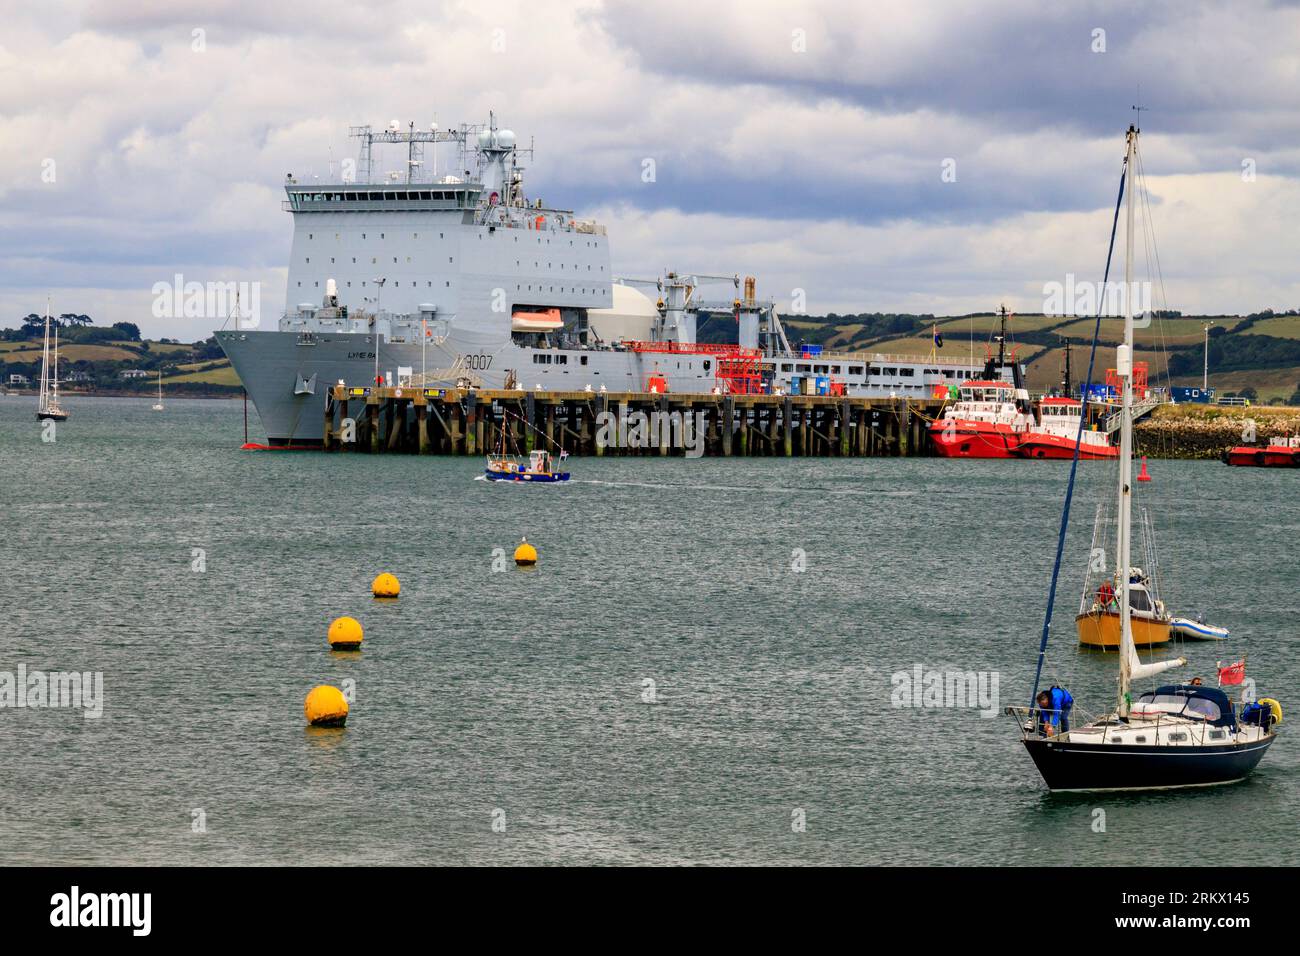 Le chantier naval et le navire de ravitaillement Lyme Bay à Falmouth, Cornouailles, Angleterre, Royaume-Uni Banque D'Images